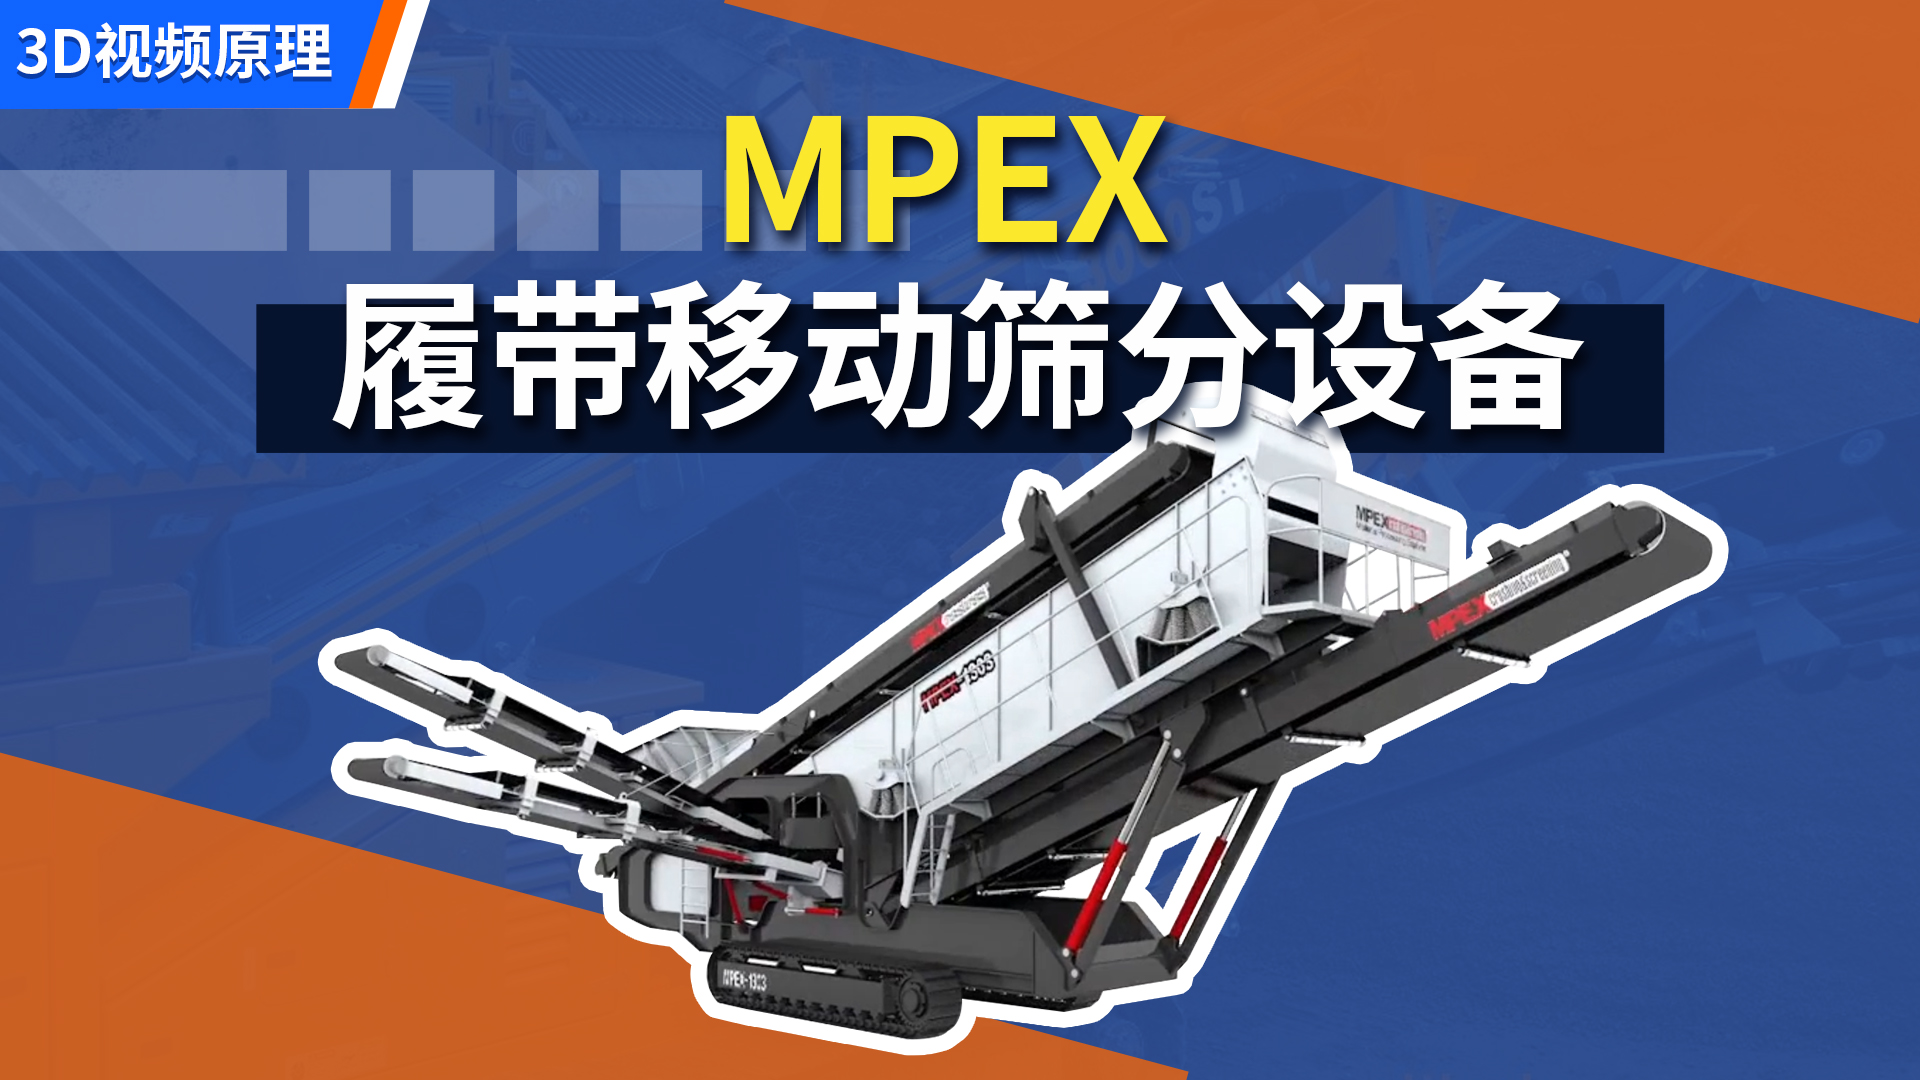 MPEX 履带移动筛分设备组装